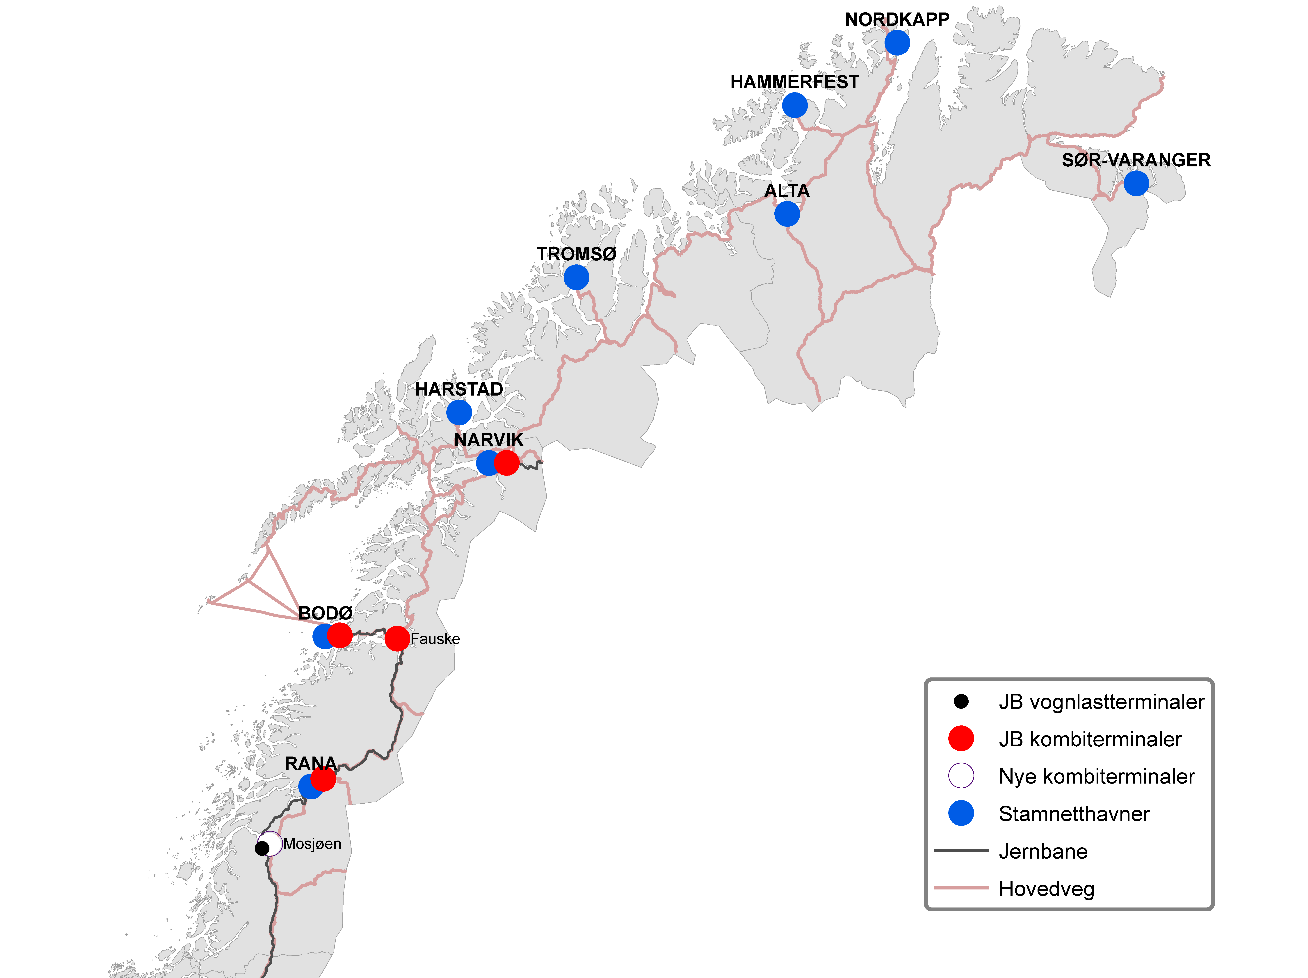 4.6 Alternative terminalstrukturer Nord-Norge 4.6.1 Om referansealternativet for Nord-Norge I tilknytning til arbeidet med terminalstrukturer i bred godsanalyse, ble det avholdt et miniverksted i